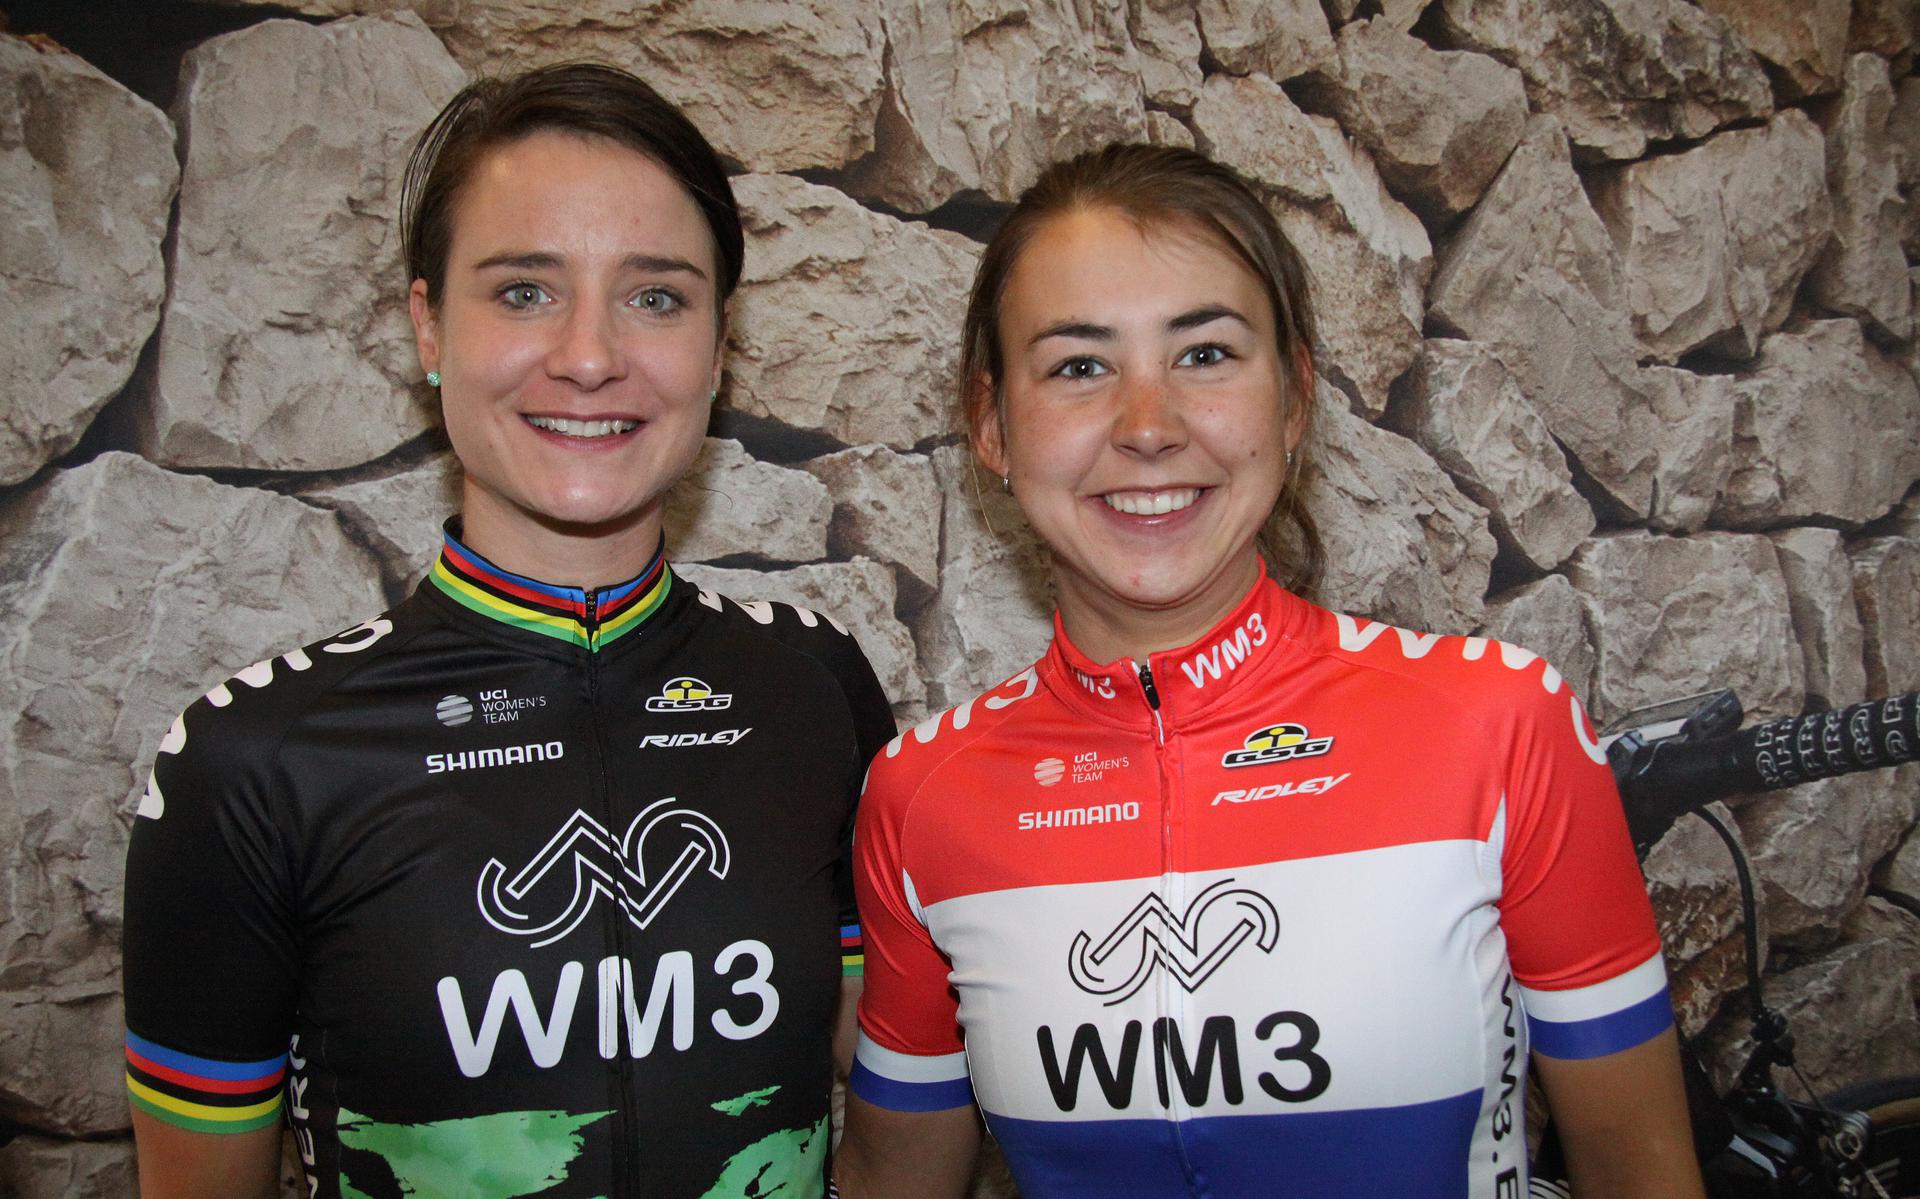 Drie jaar geleden waren Anouska Koster (rechts) en Marianne Vos ook al ploeggenoten, toen bij WM3 Pro Cycling.